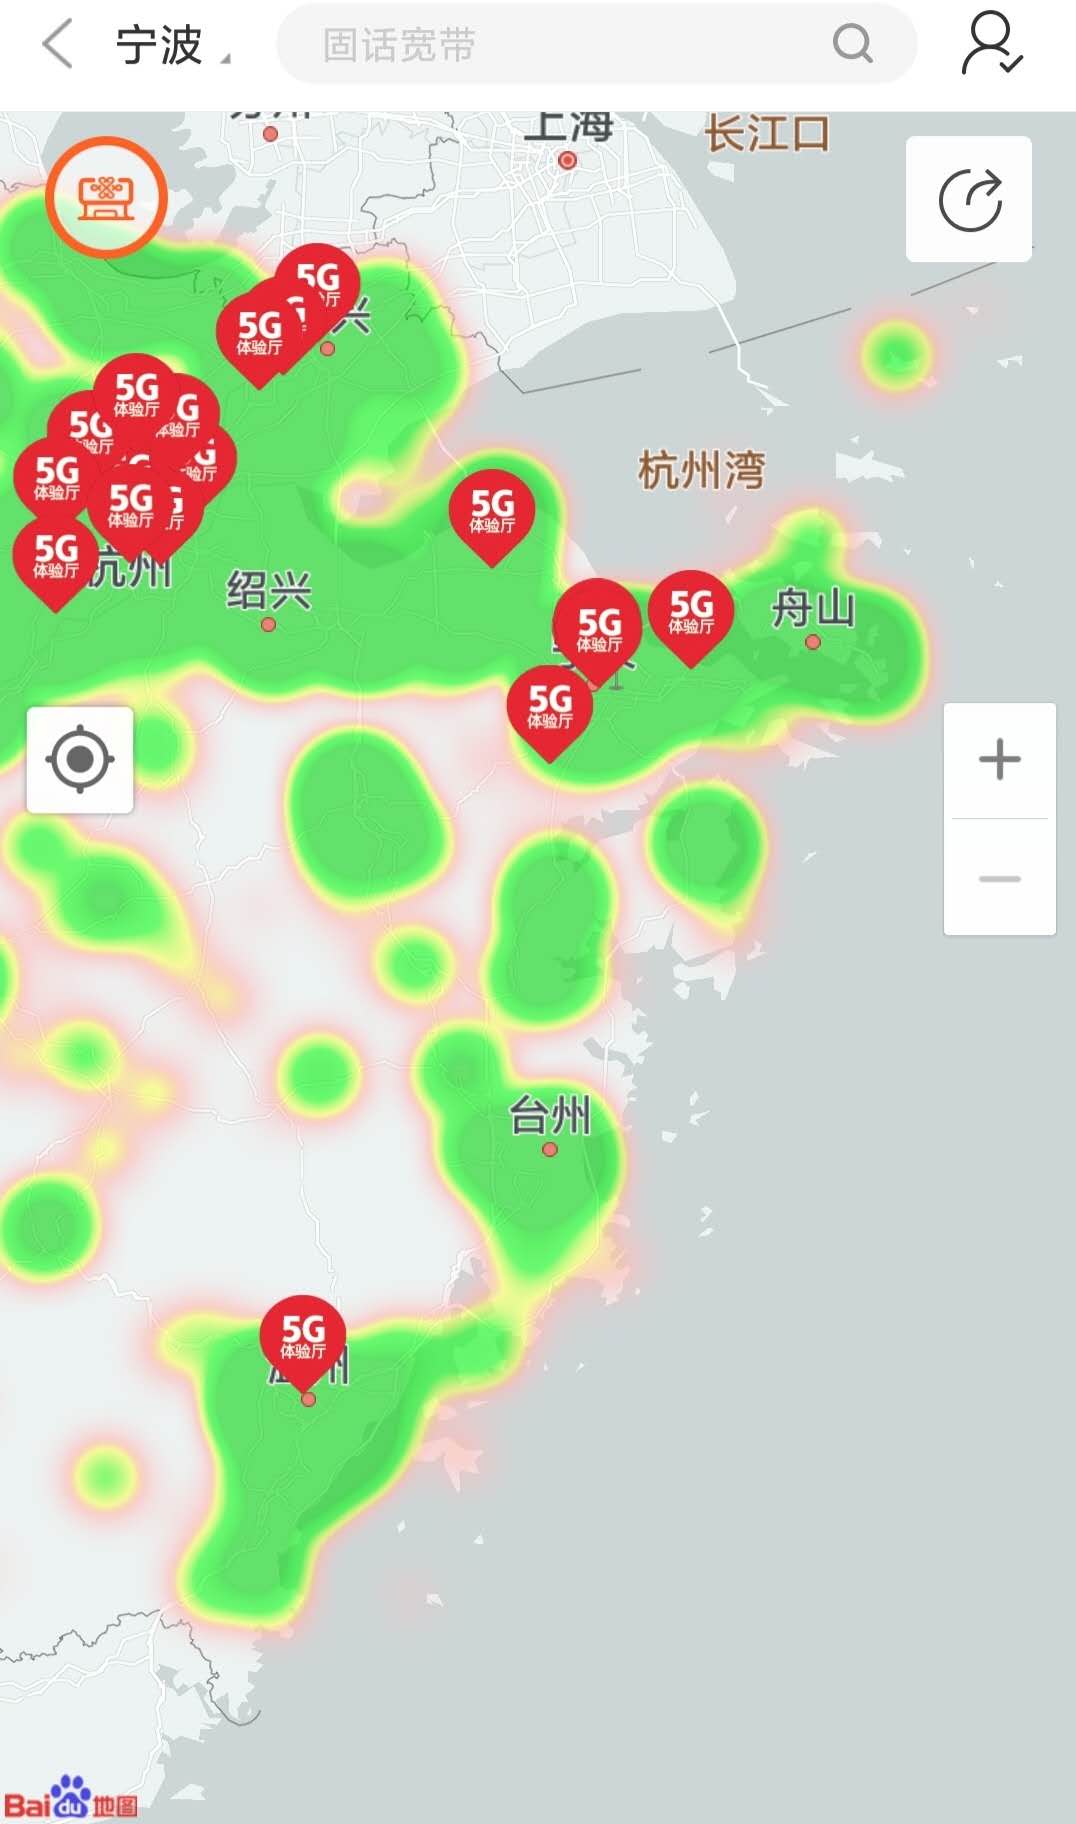 5G信号浙江覆盖范围